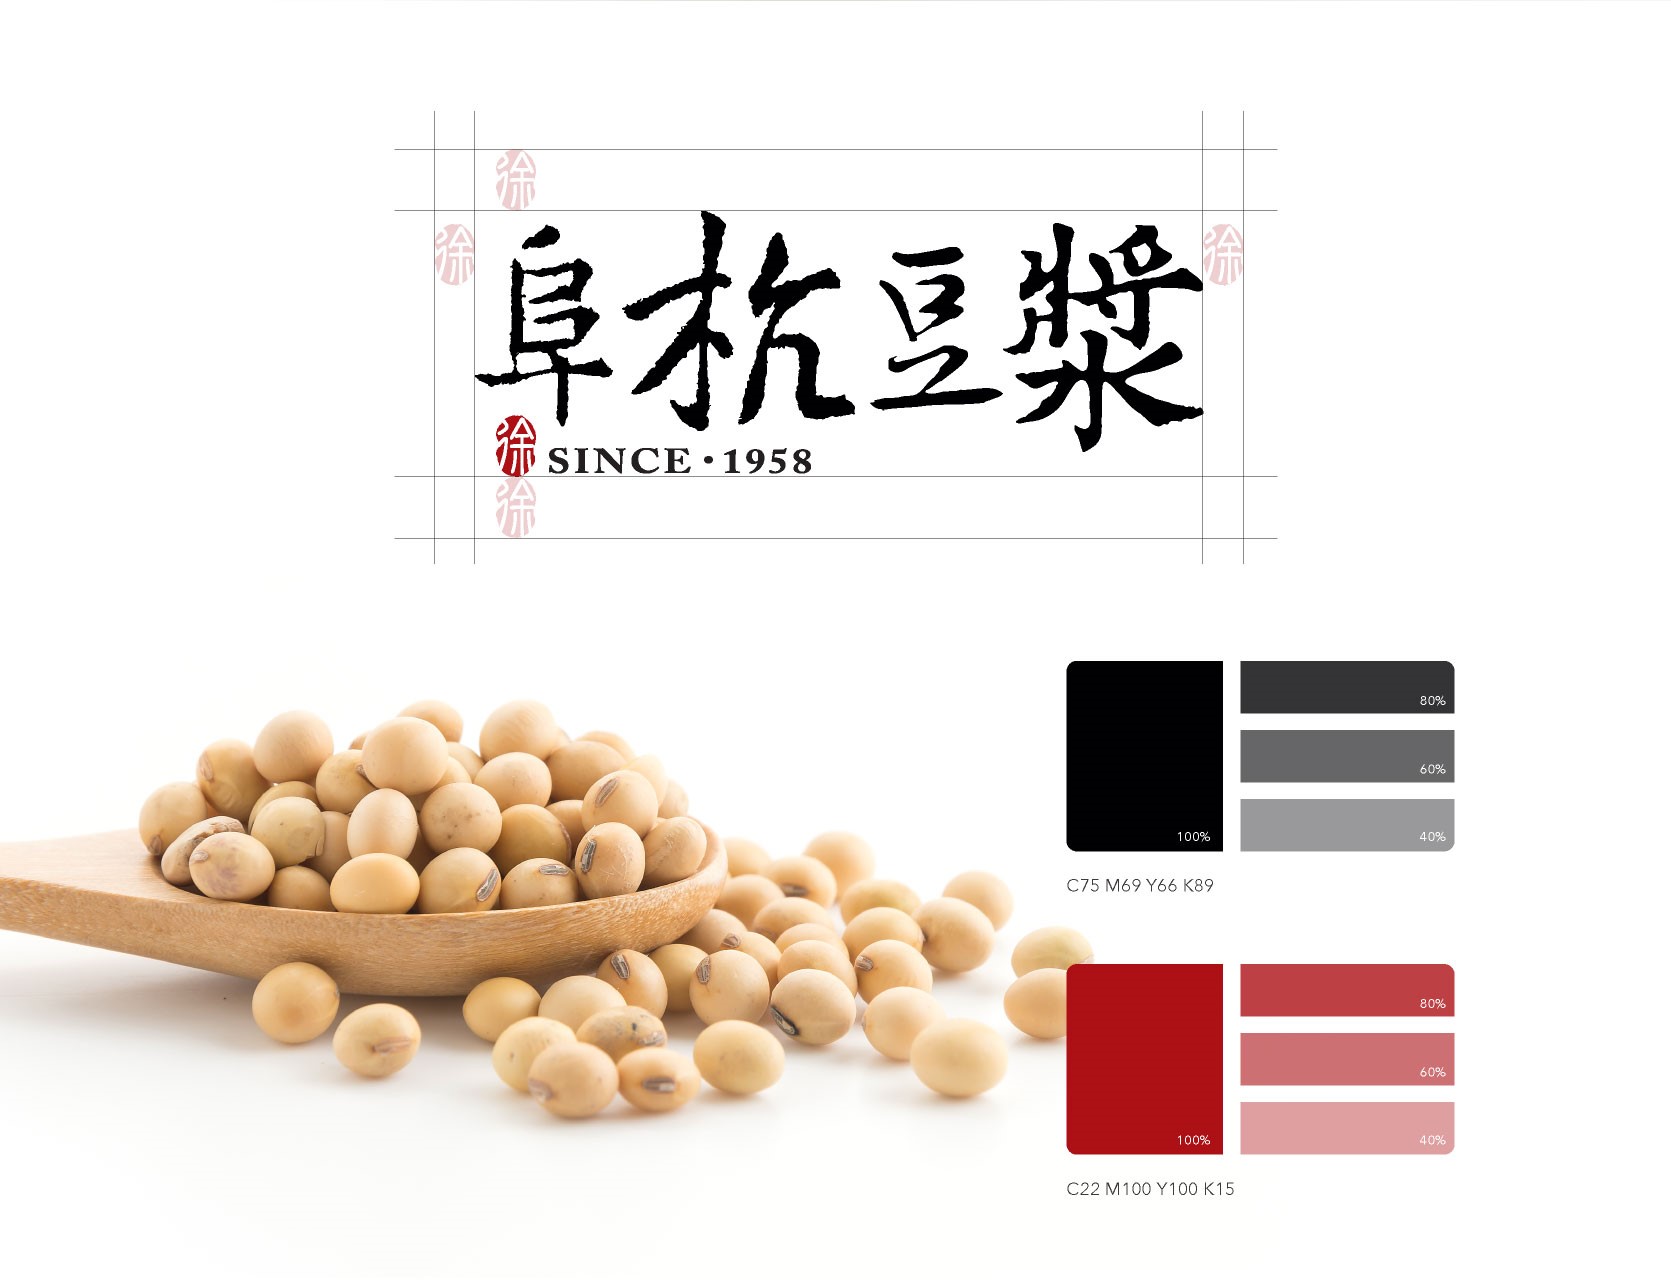 阜杭豆漿 品牌形象重整規劃設計